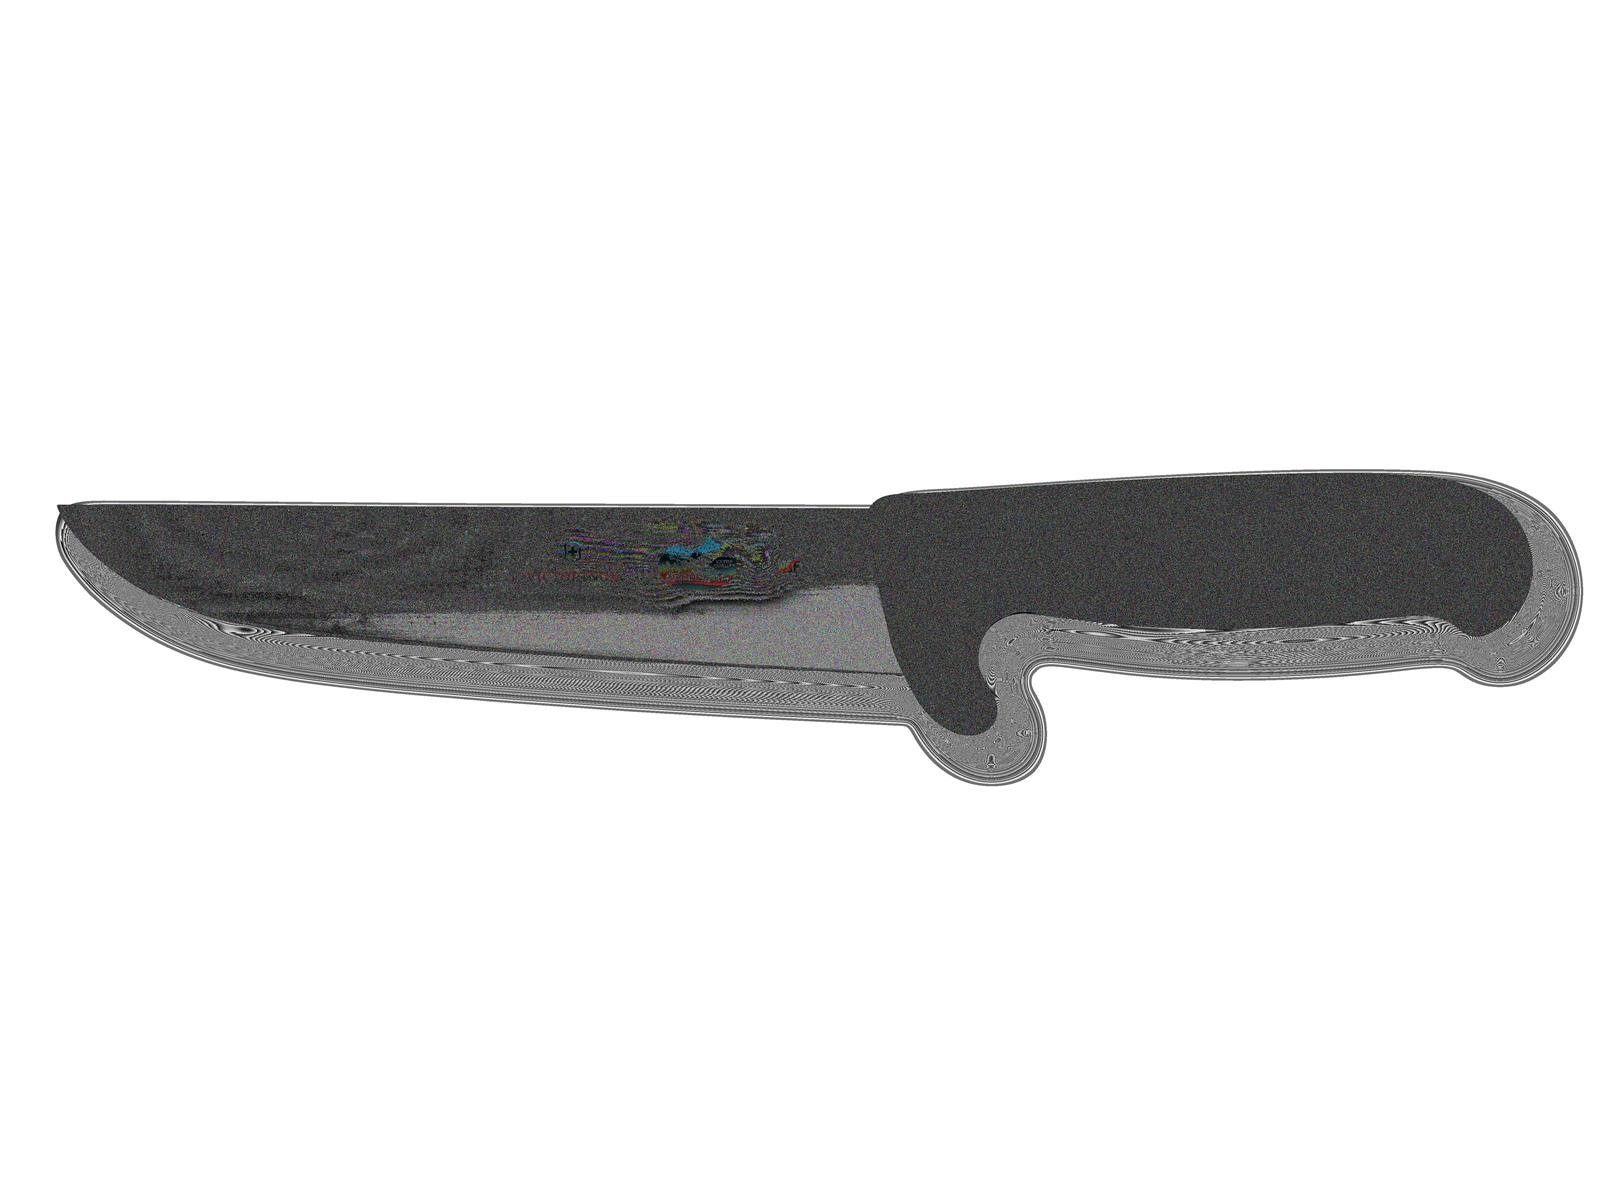 Taschenmesser Nose Victorinox Fibrox Safety Schlacht-&Bankmesser,Norm.Schl.,schwarz,18cm